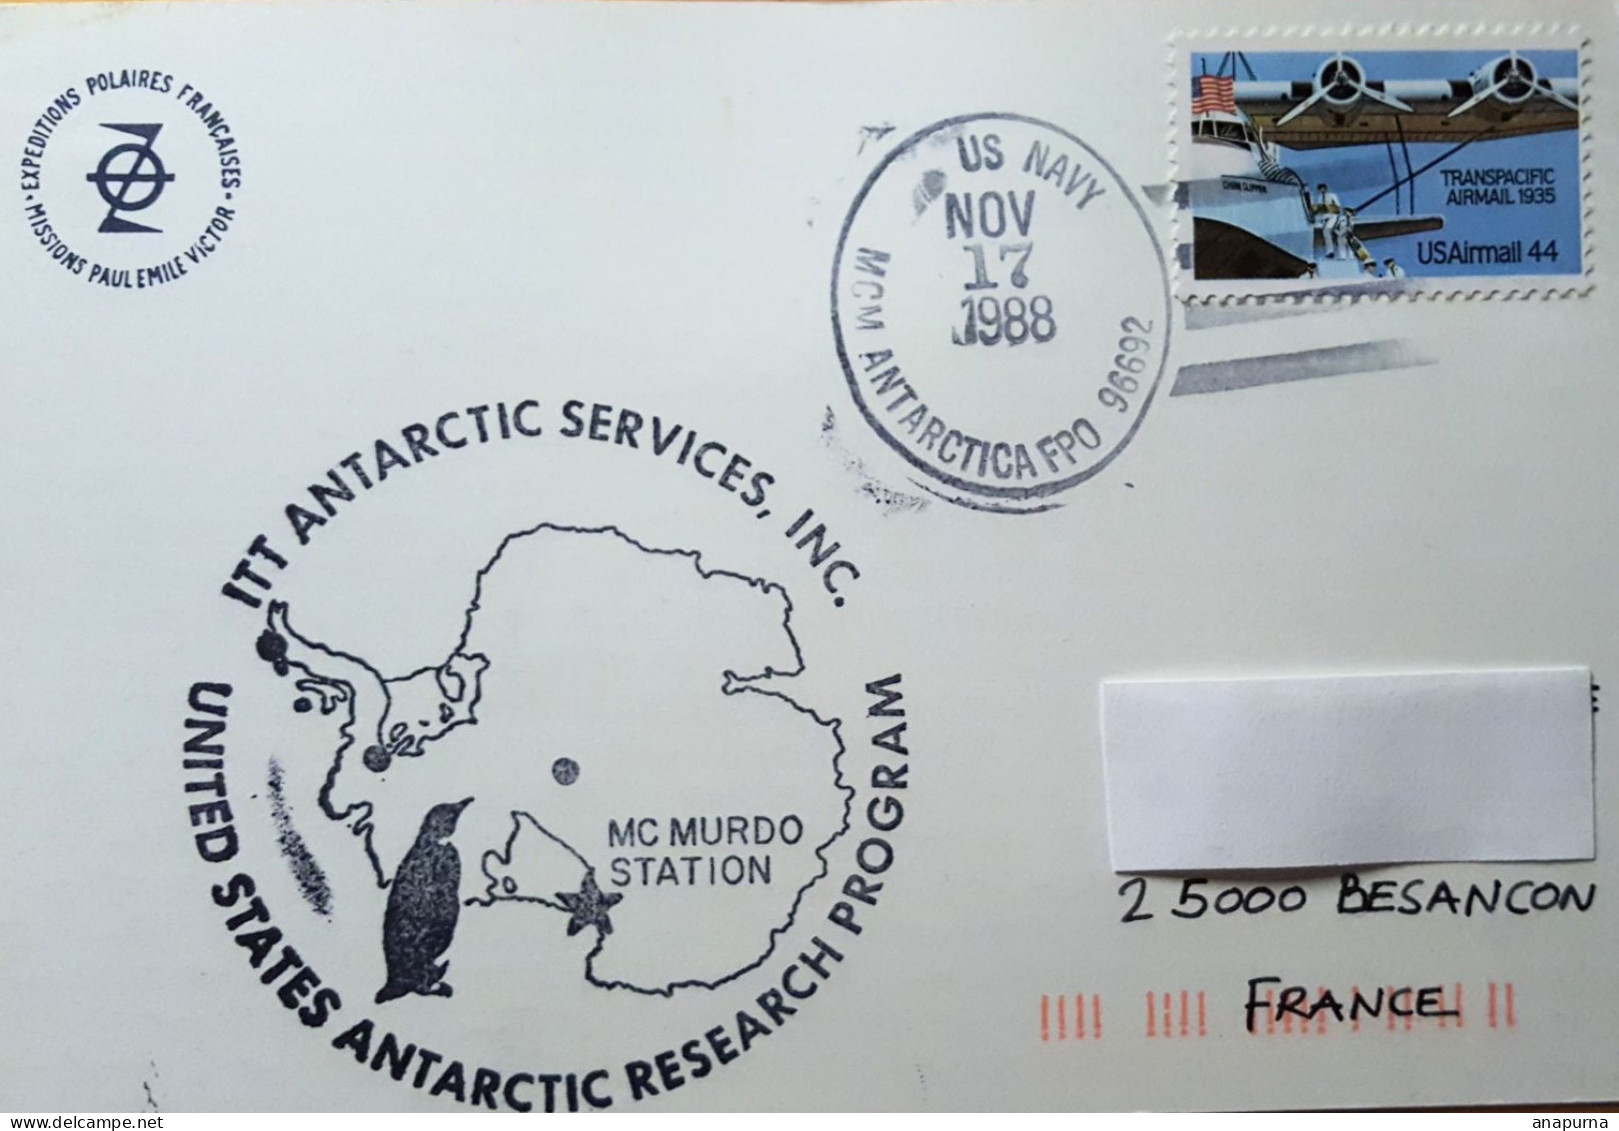 Carte Paul Emile Victor Postée à Mc Murdo 17 Nov 1988 Avec Grand Cachet Illustré US Antarctic Research Program - Programmes Scientifiques